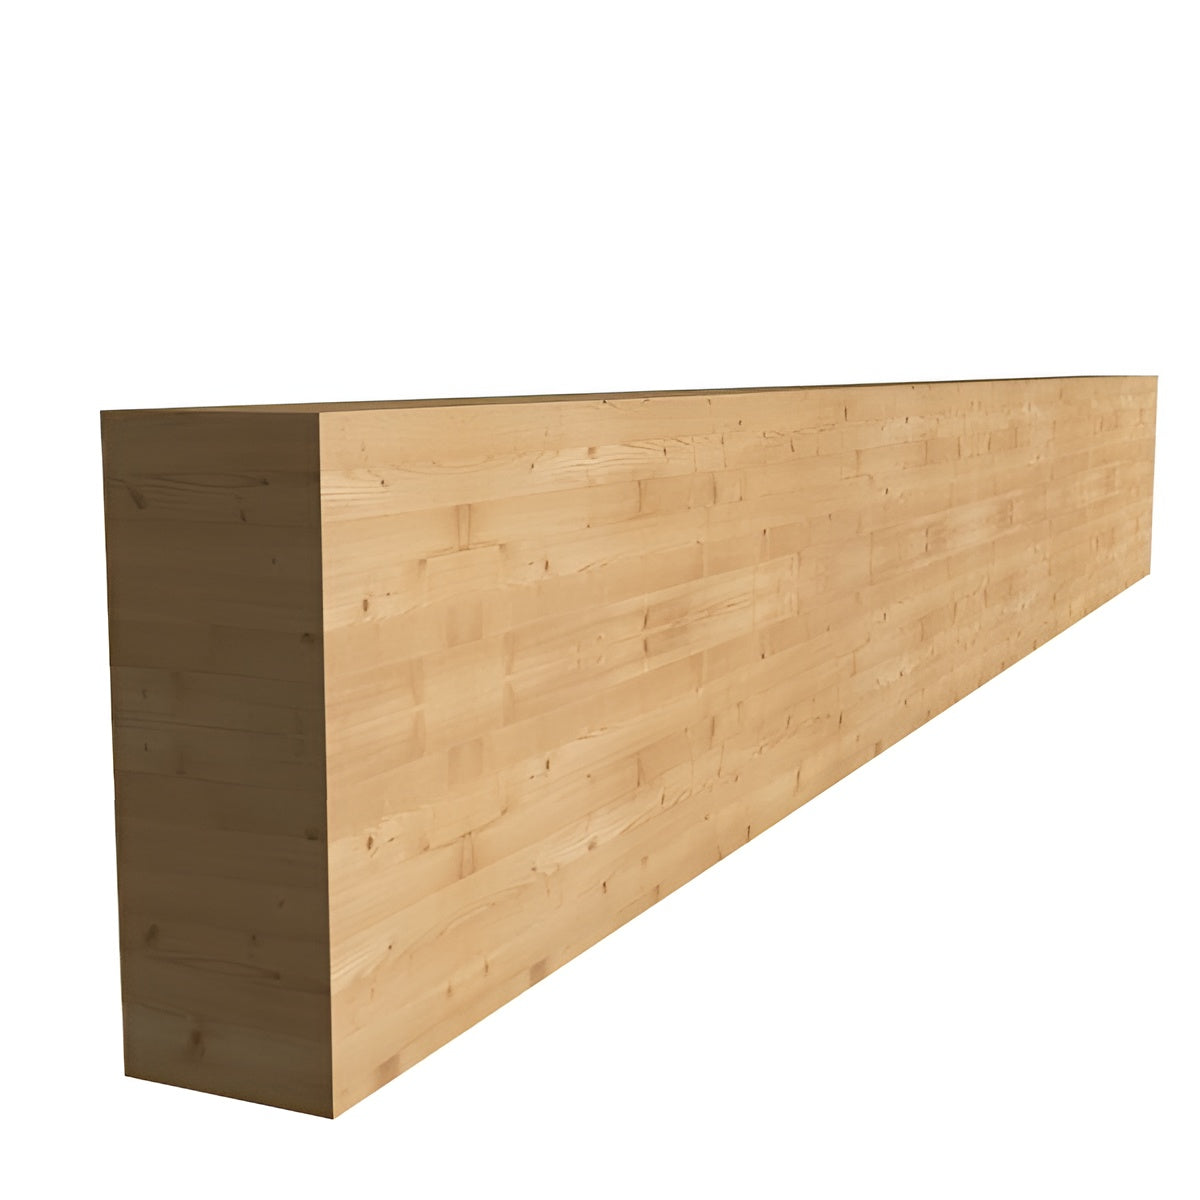 120 x 320 x 13500 mm Σύνθετη ξυλεία GL24